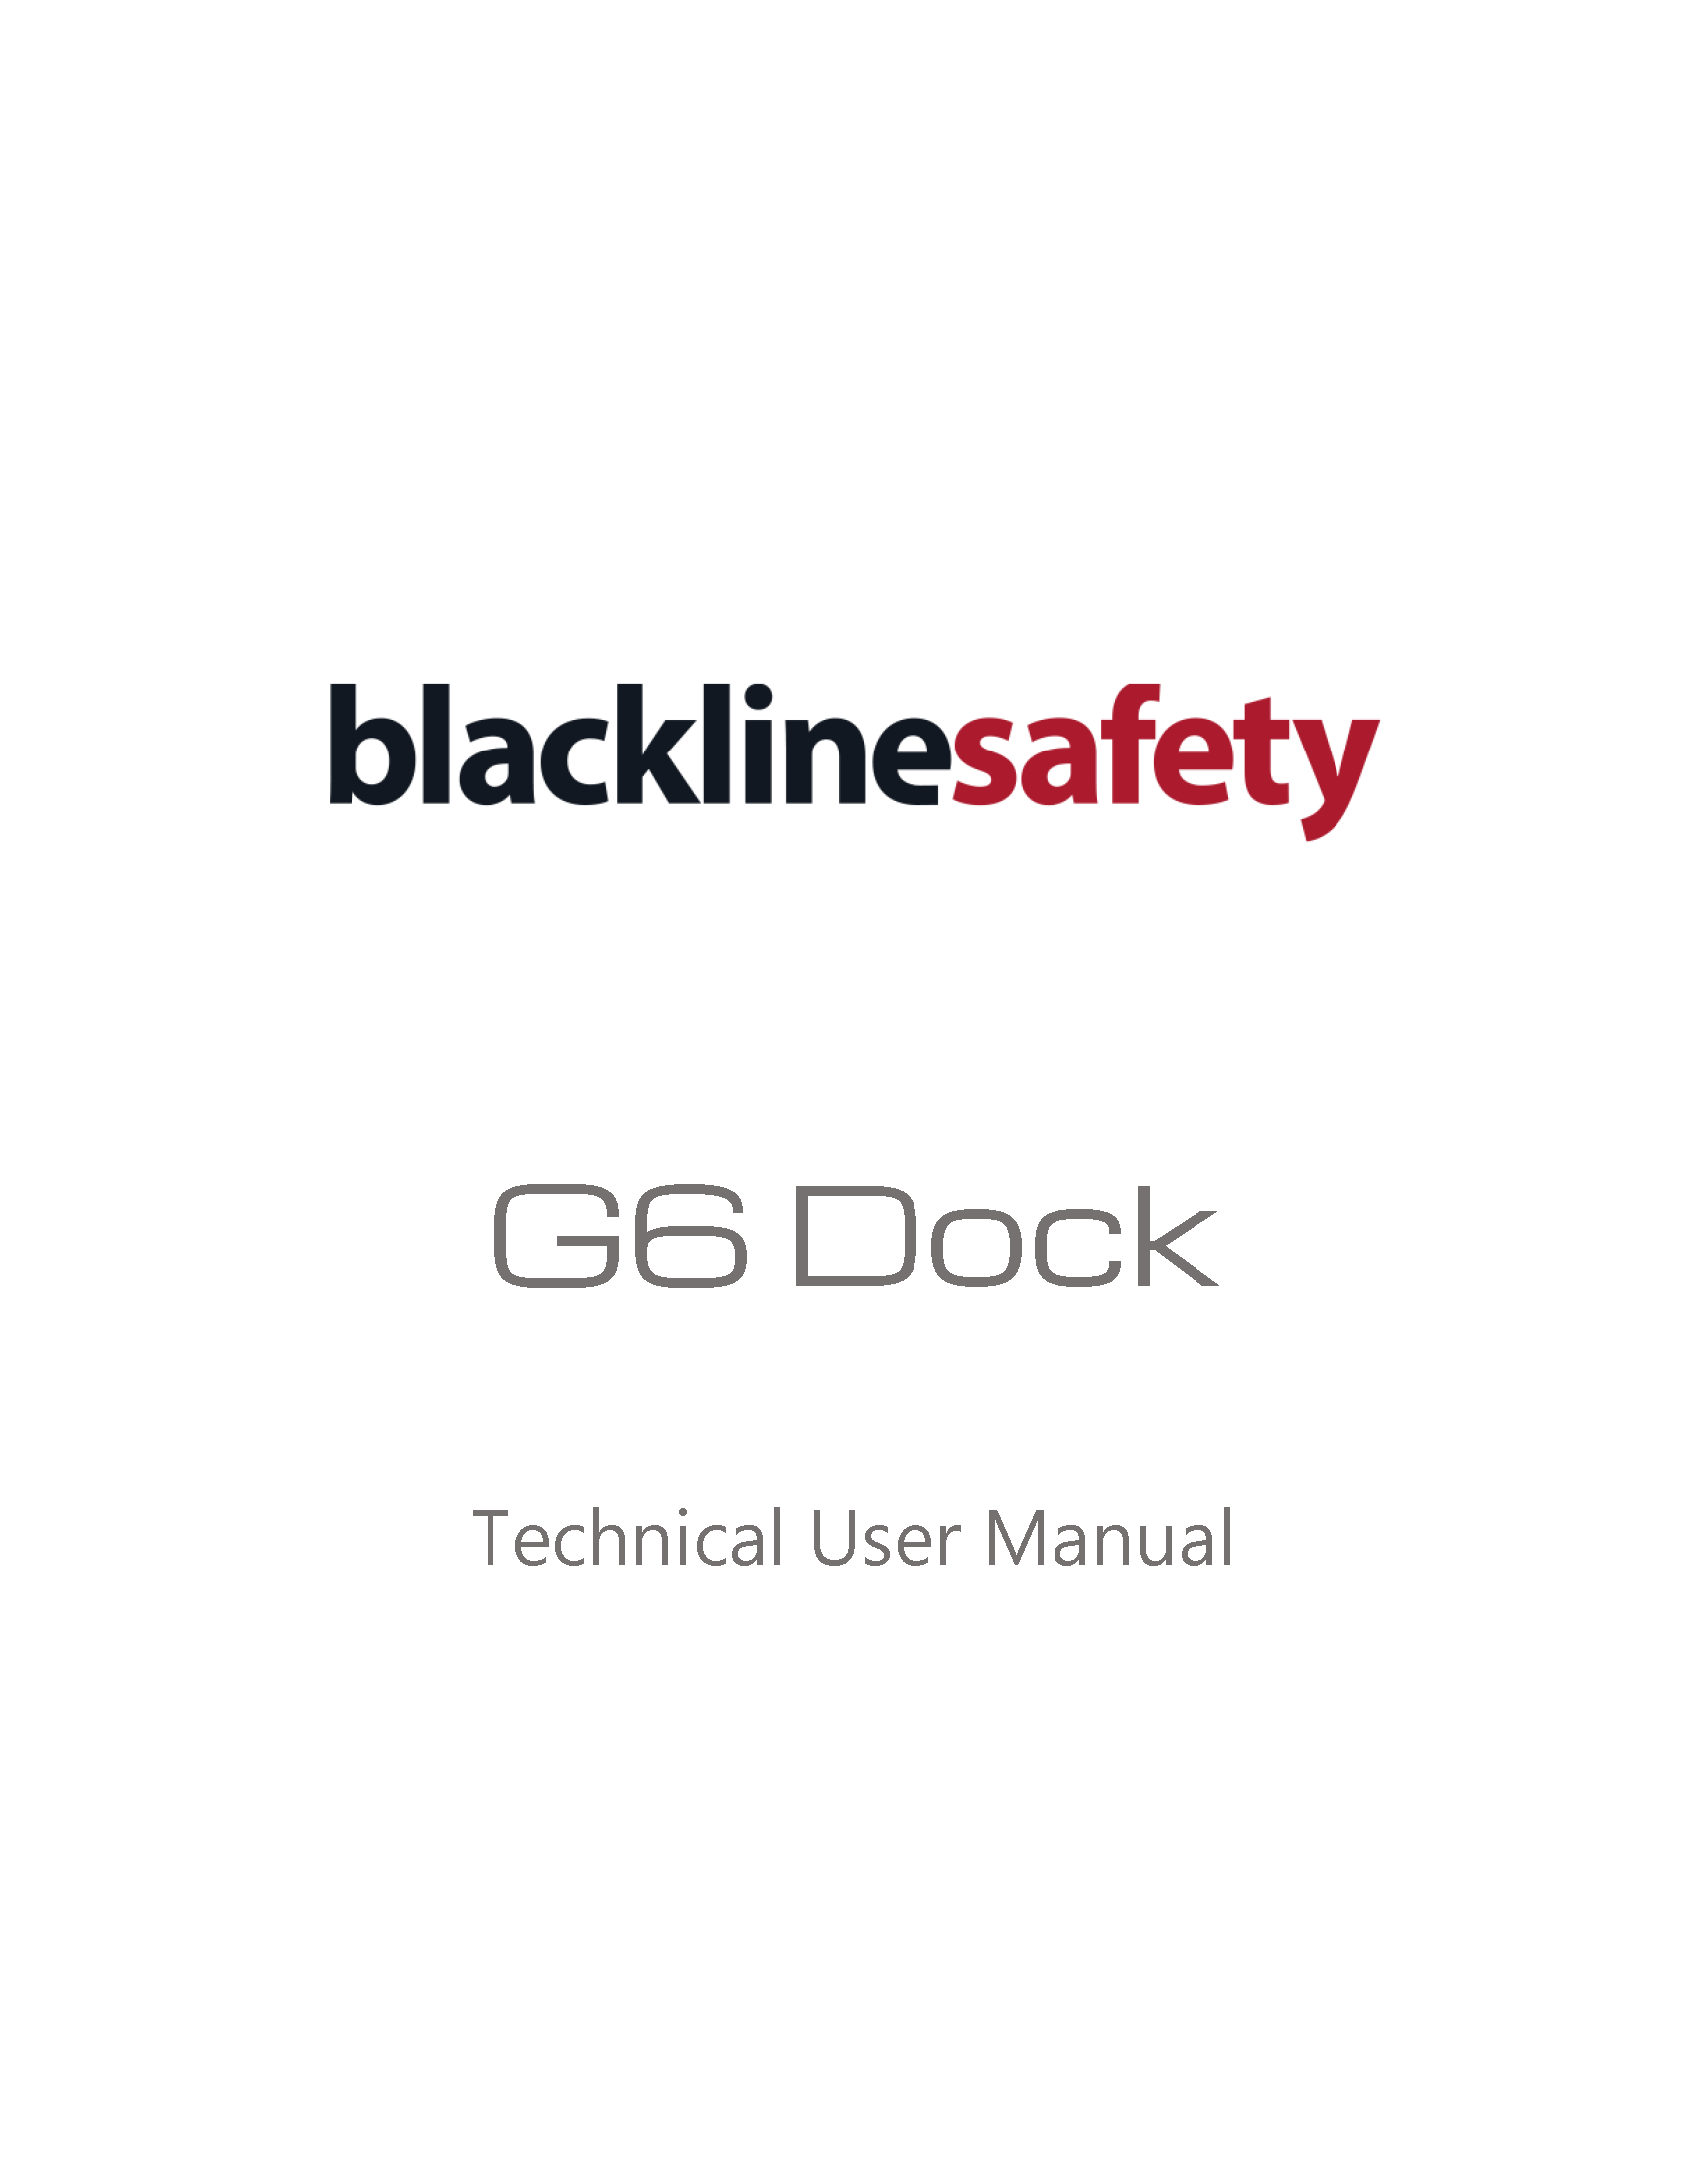 Manuale tecnico per l'utente del dock G6_R1 - IT Copertina